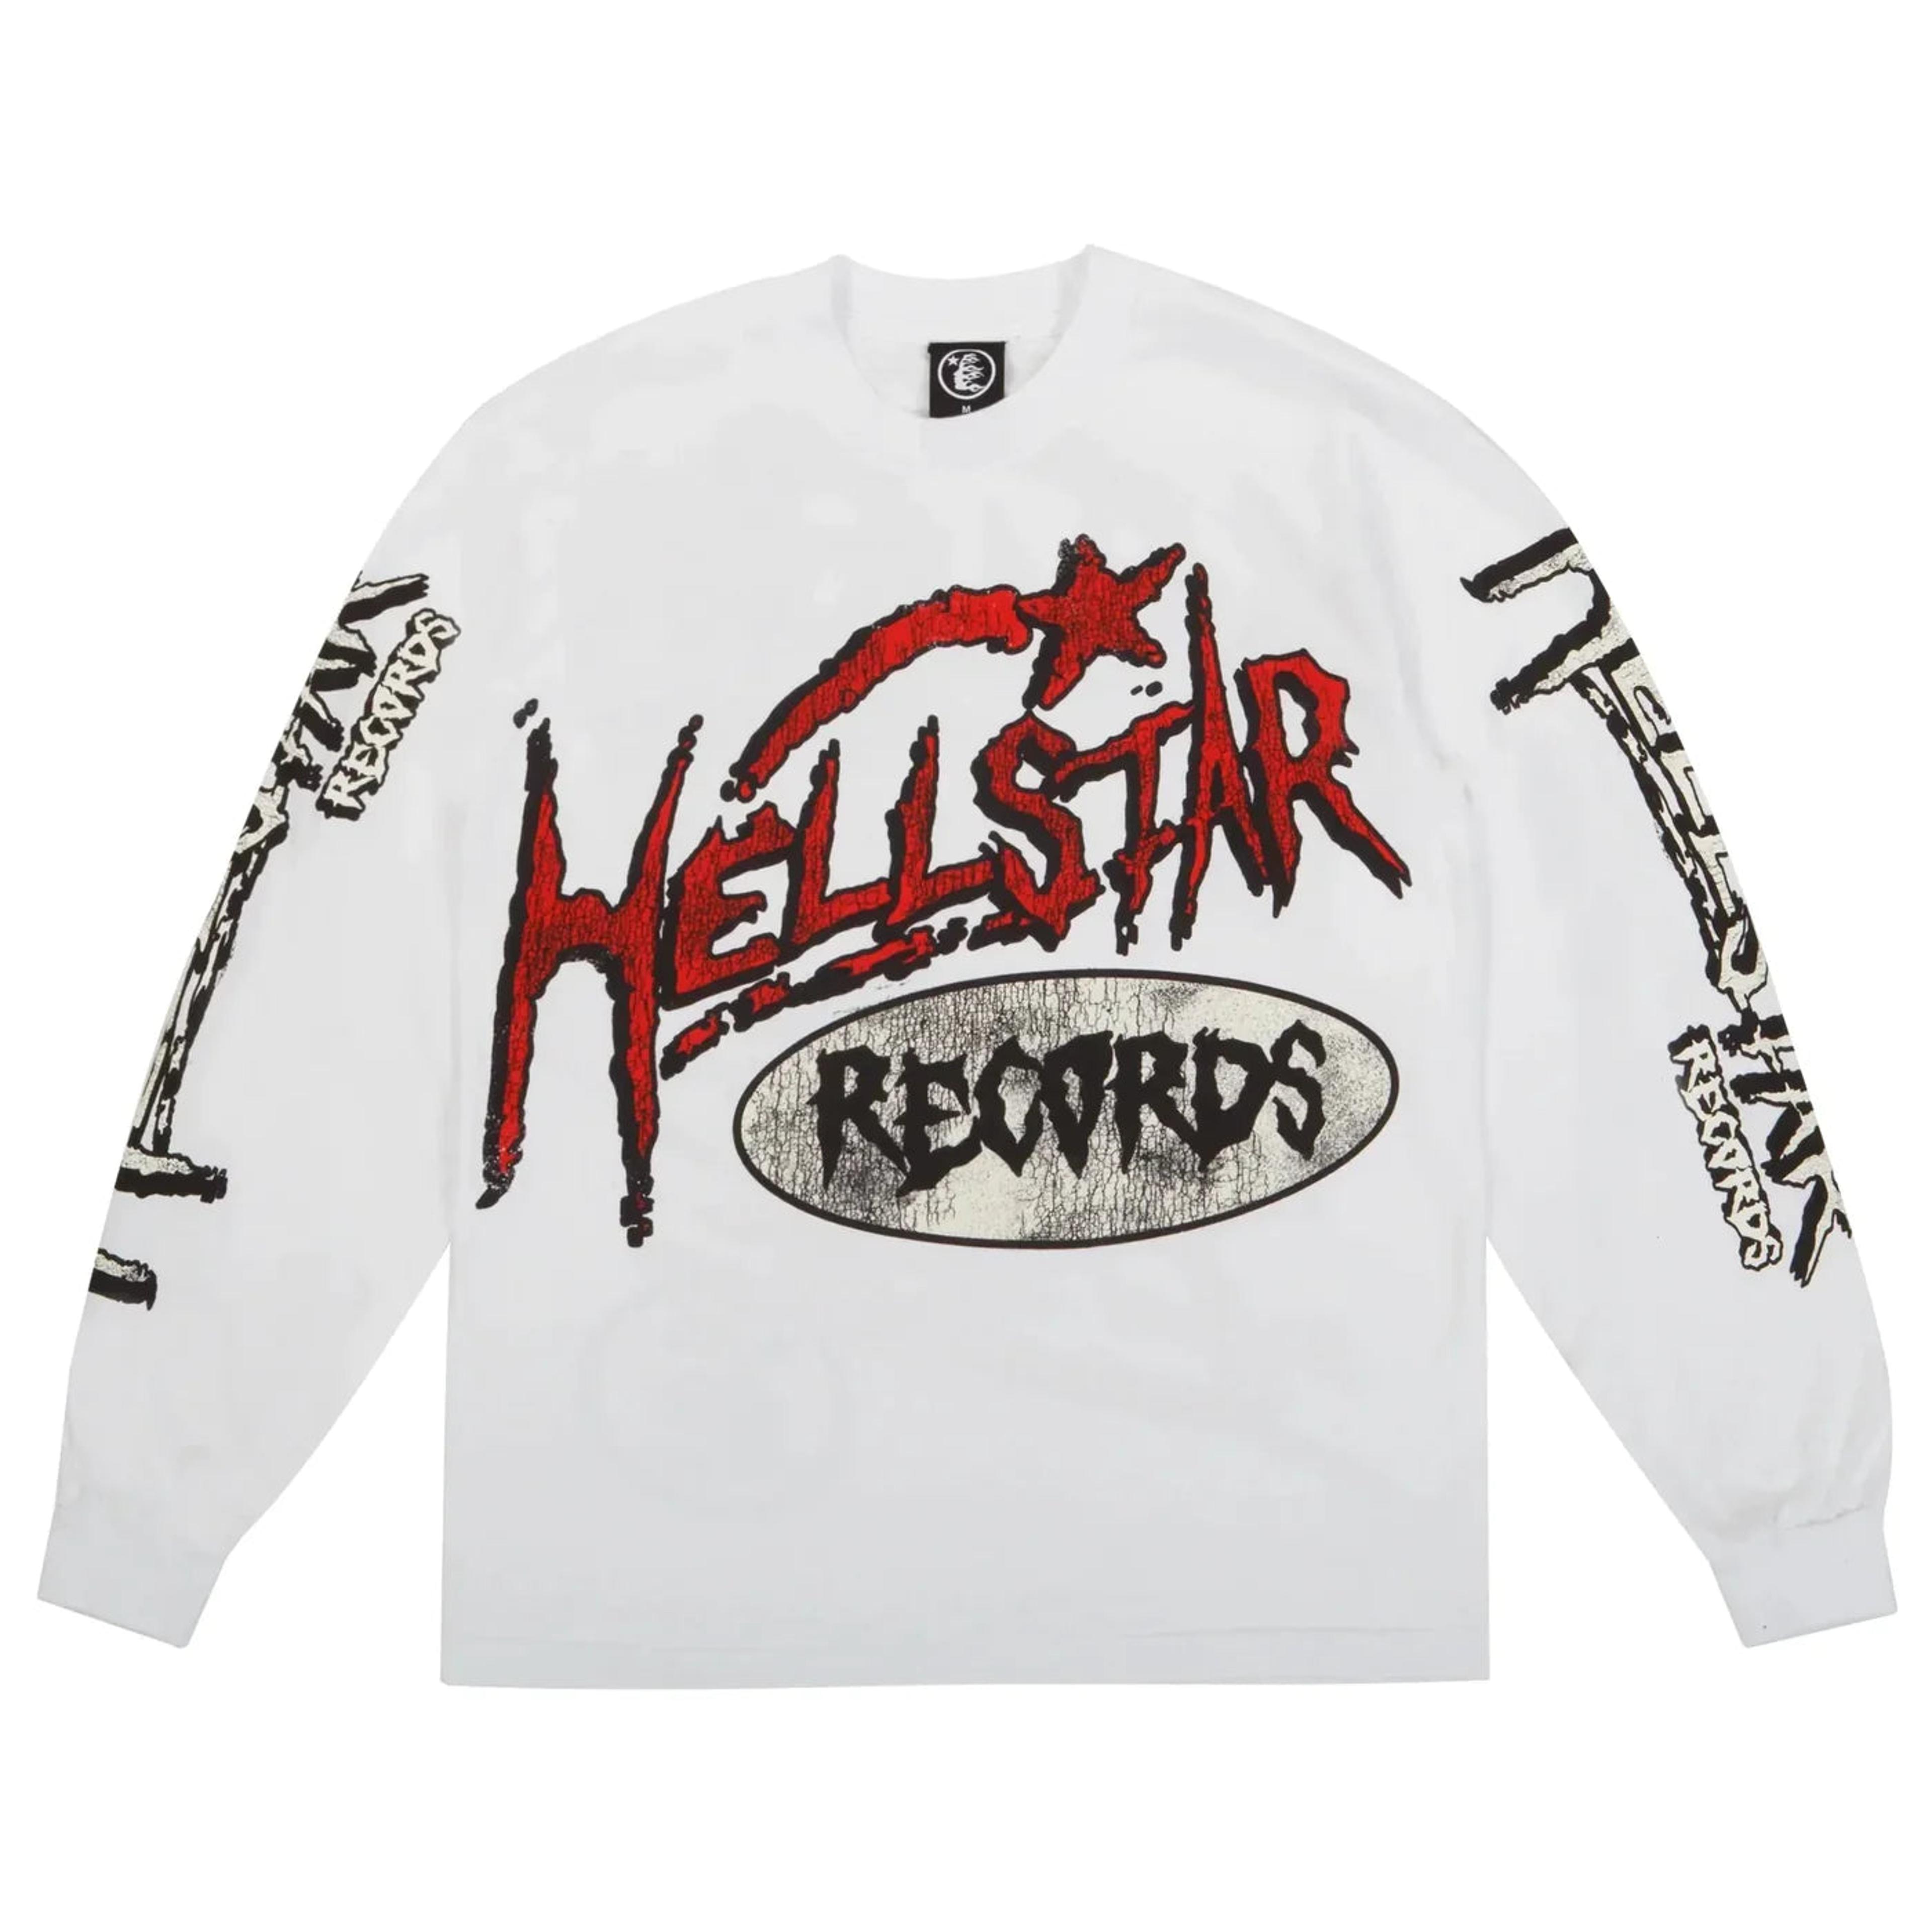 Hellstar - Records L/S Tee